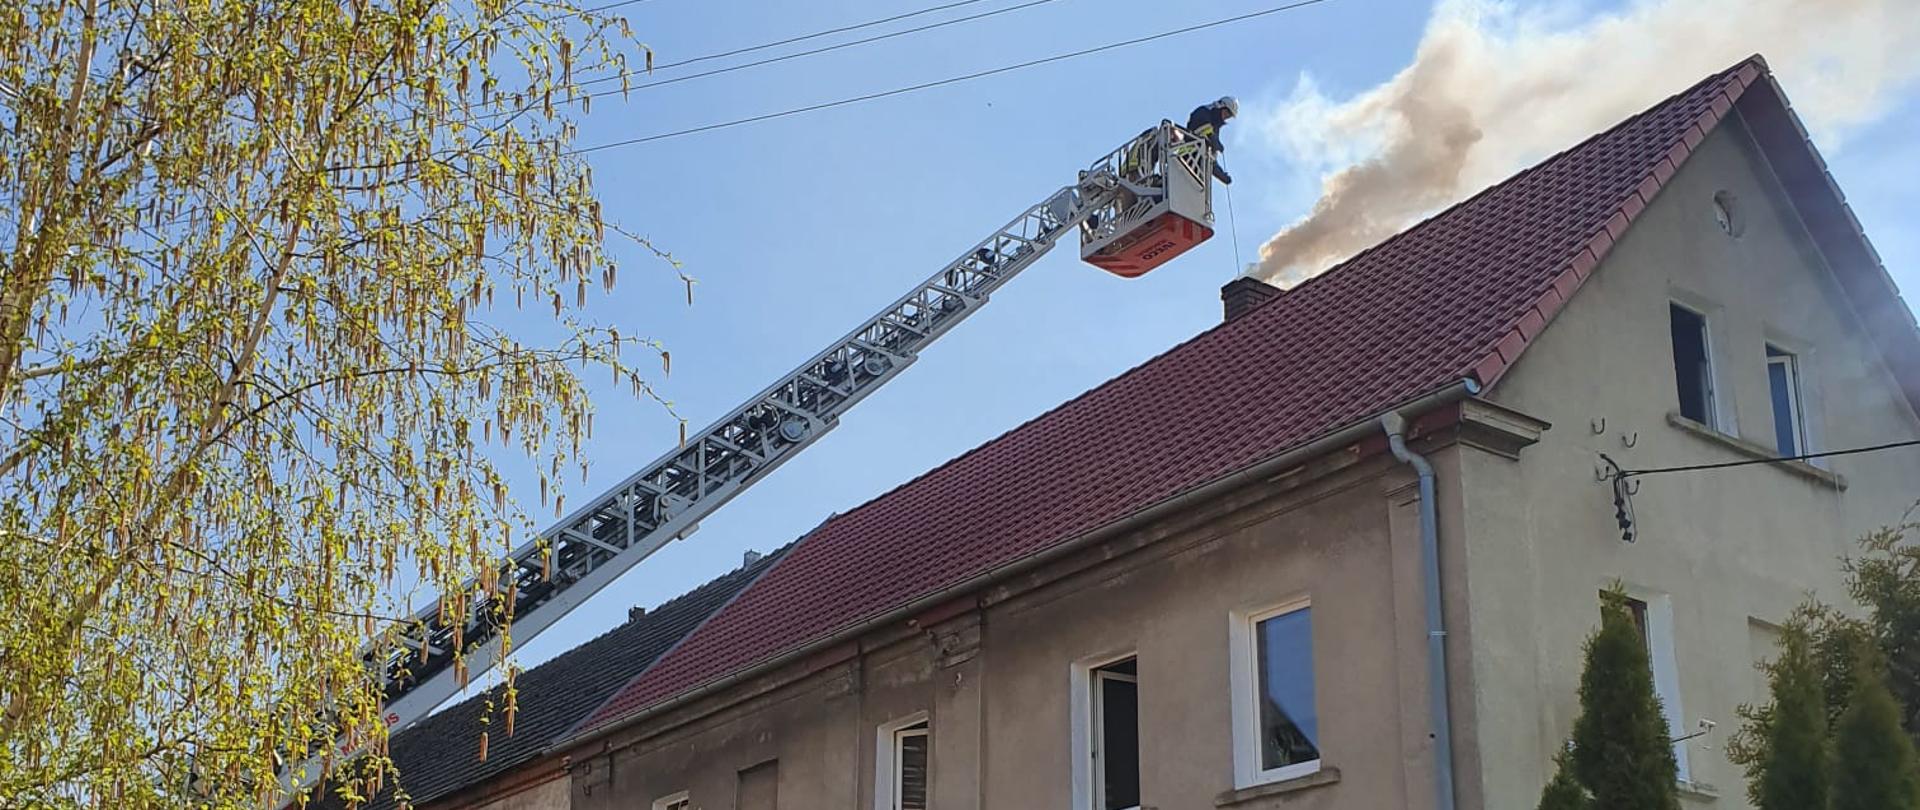 Pożar sadzy w kominie w miejscowości Pogorzela - zdjęcie przedstawia strażaka pracującego w koszu drabiny mechanicznej, która znajduje się nad dachem przy kominie budynku w którym doszło do pożaru. Dach jest w kolorze czerwonym.